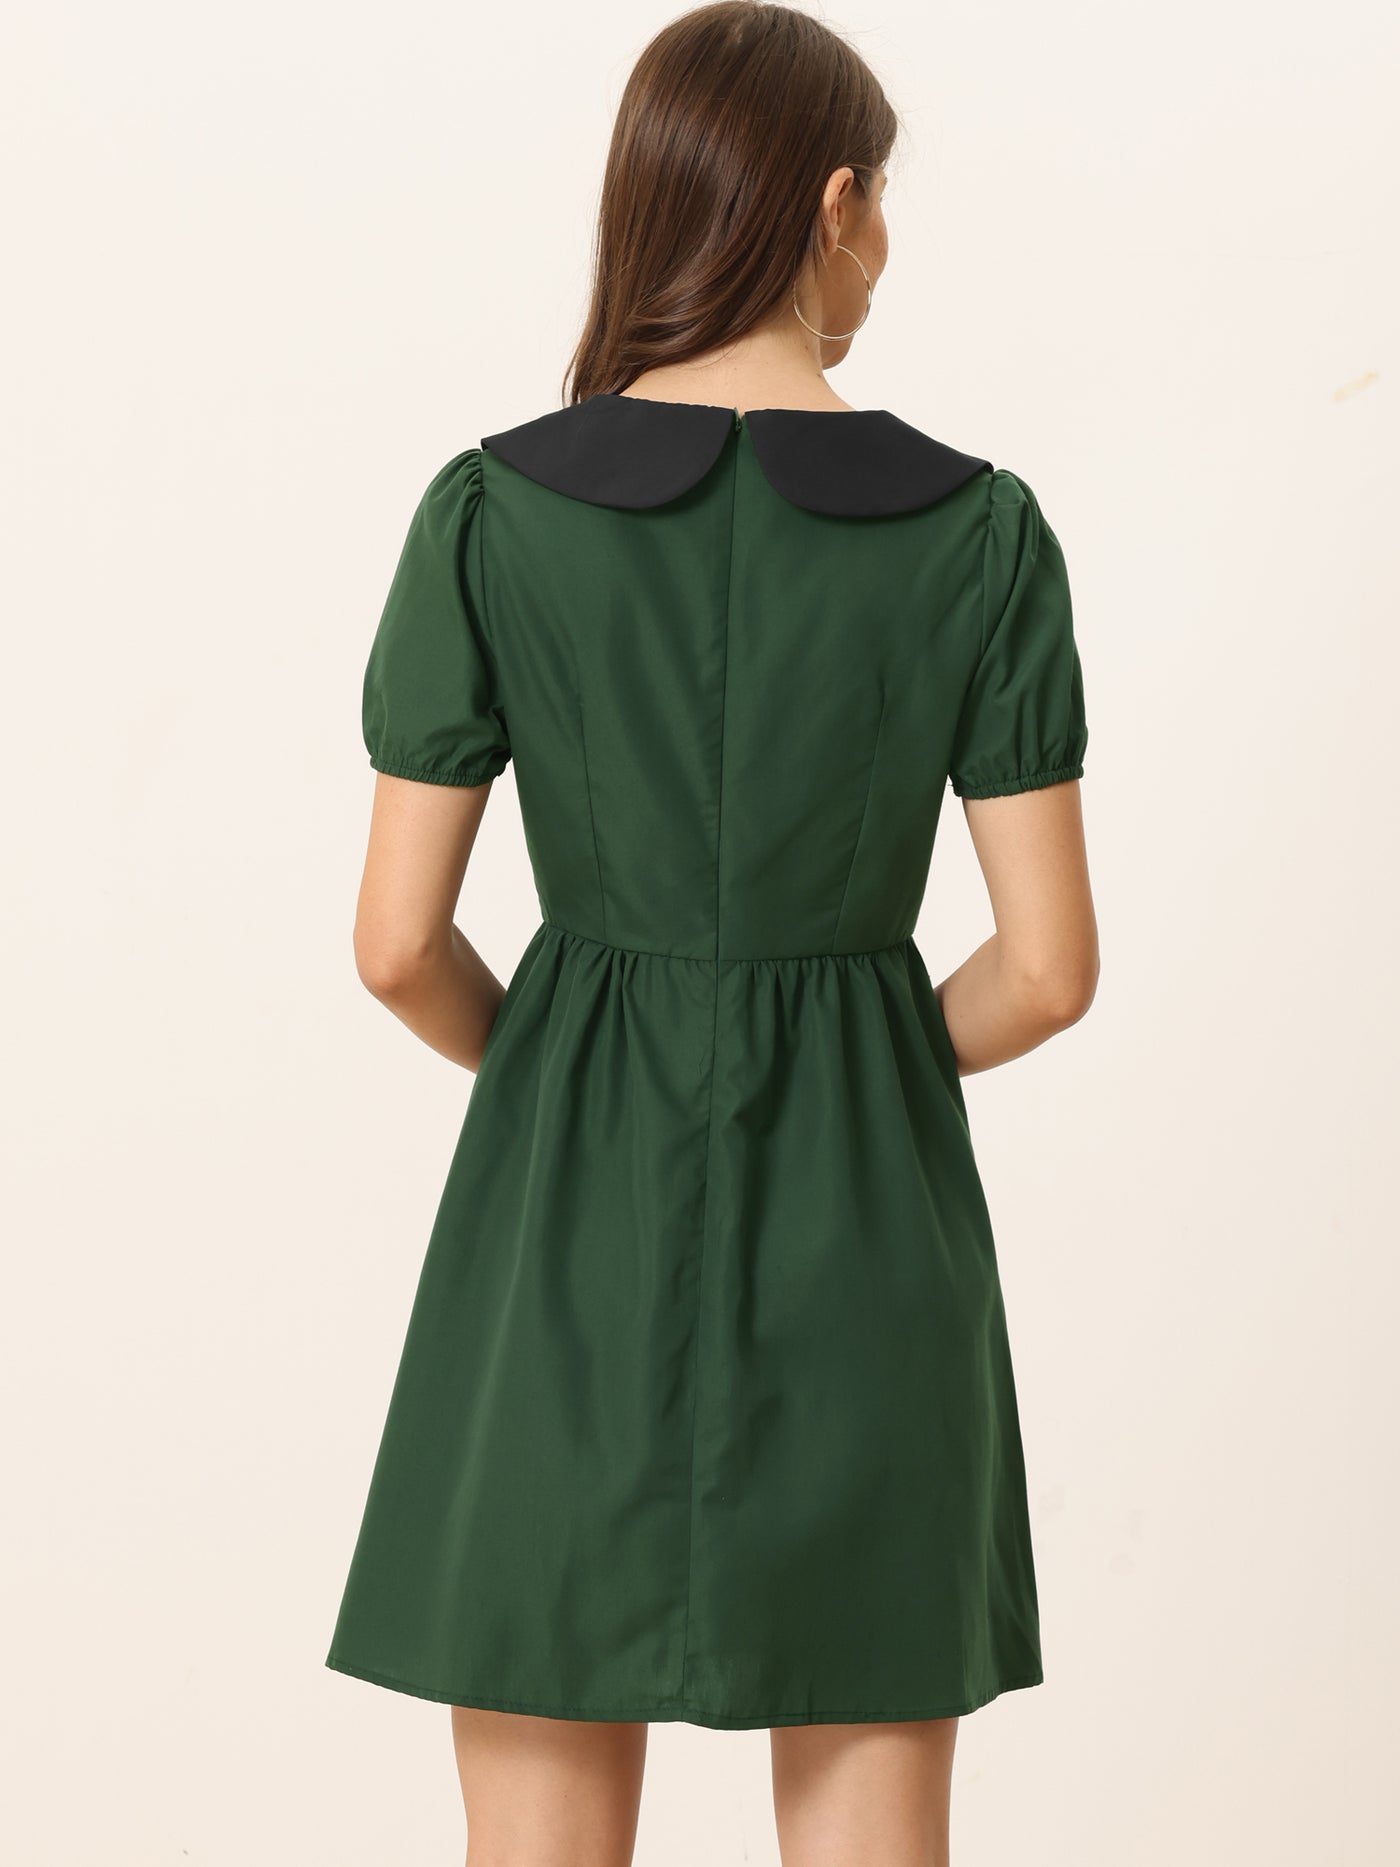 Allegra K Contrast Peter Pan Collar Puff Short Sleeve A-line Dress